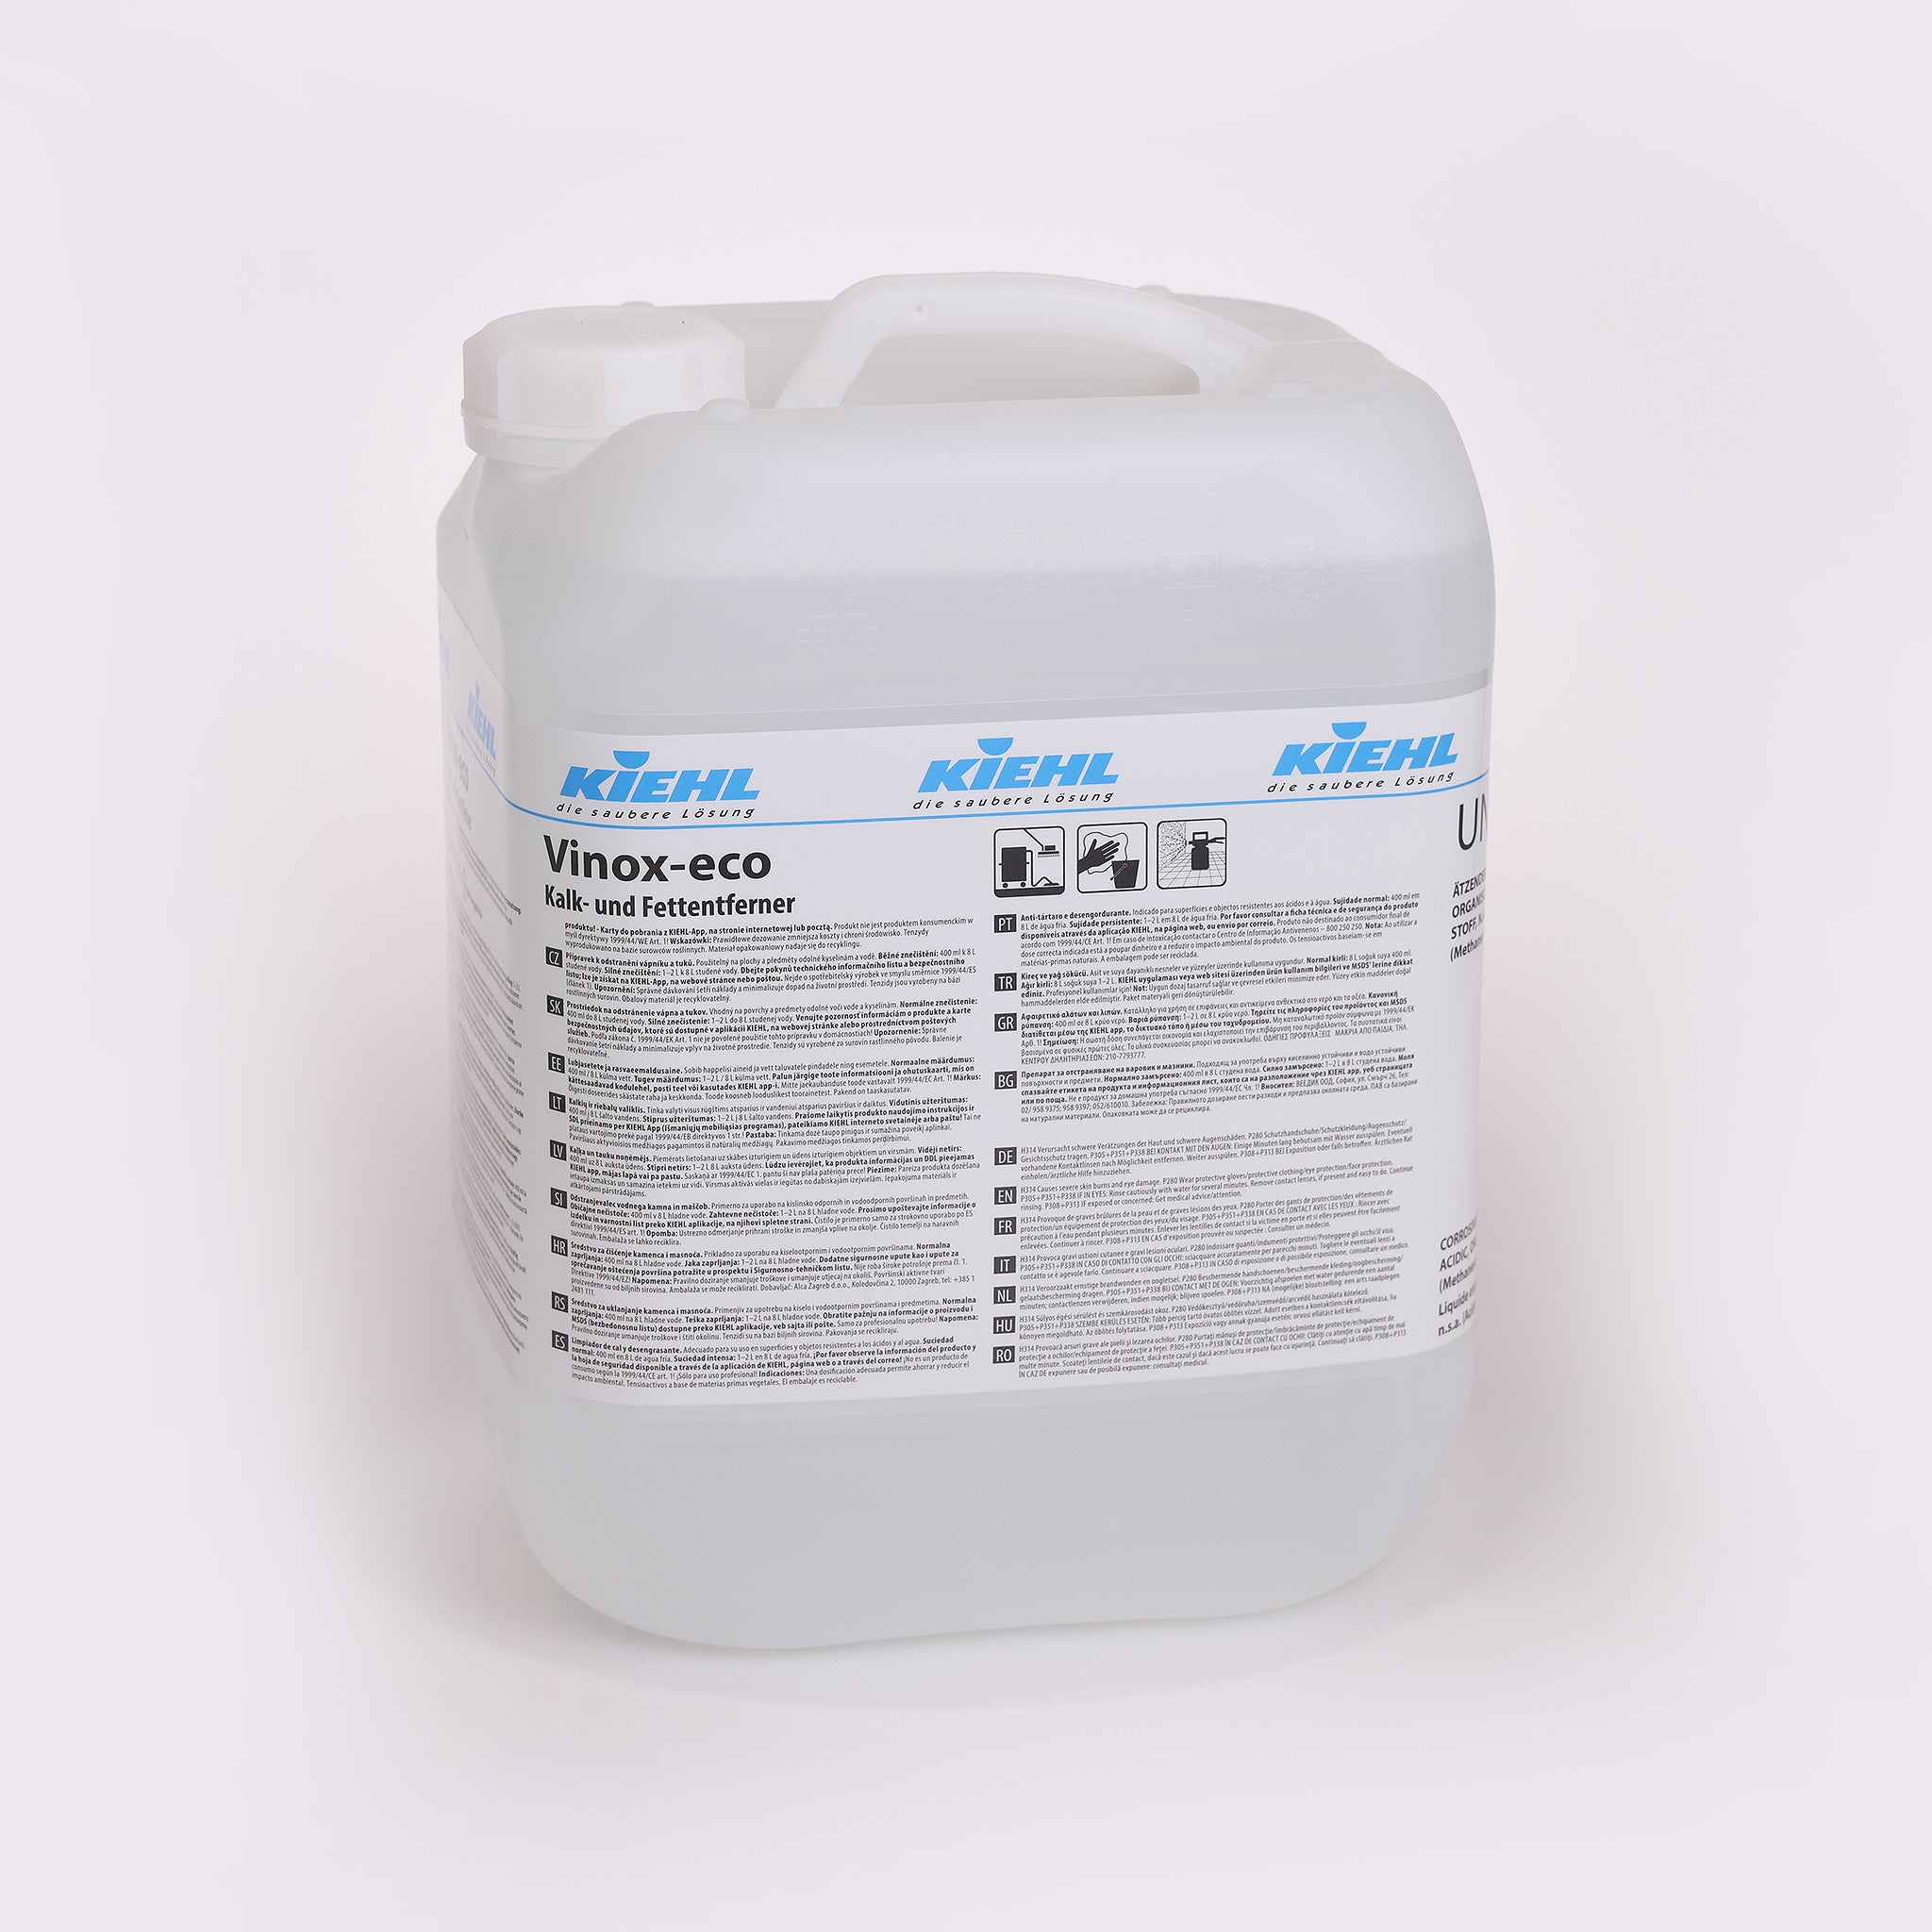 Kiehl Vinox-eco er en effektiv kalk- og fedtfjerner og sikrer en nem emulgering af fedtpletter. Til rengøring af køkkener m.m.